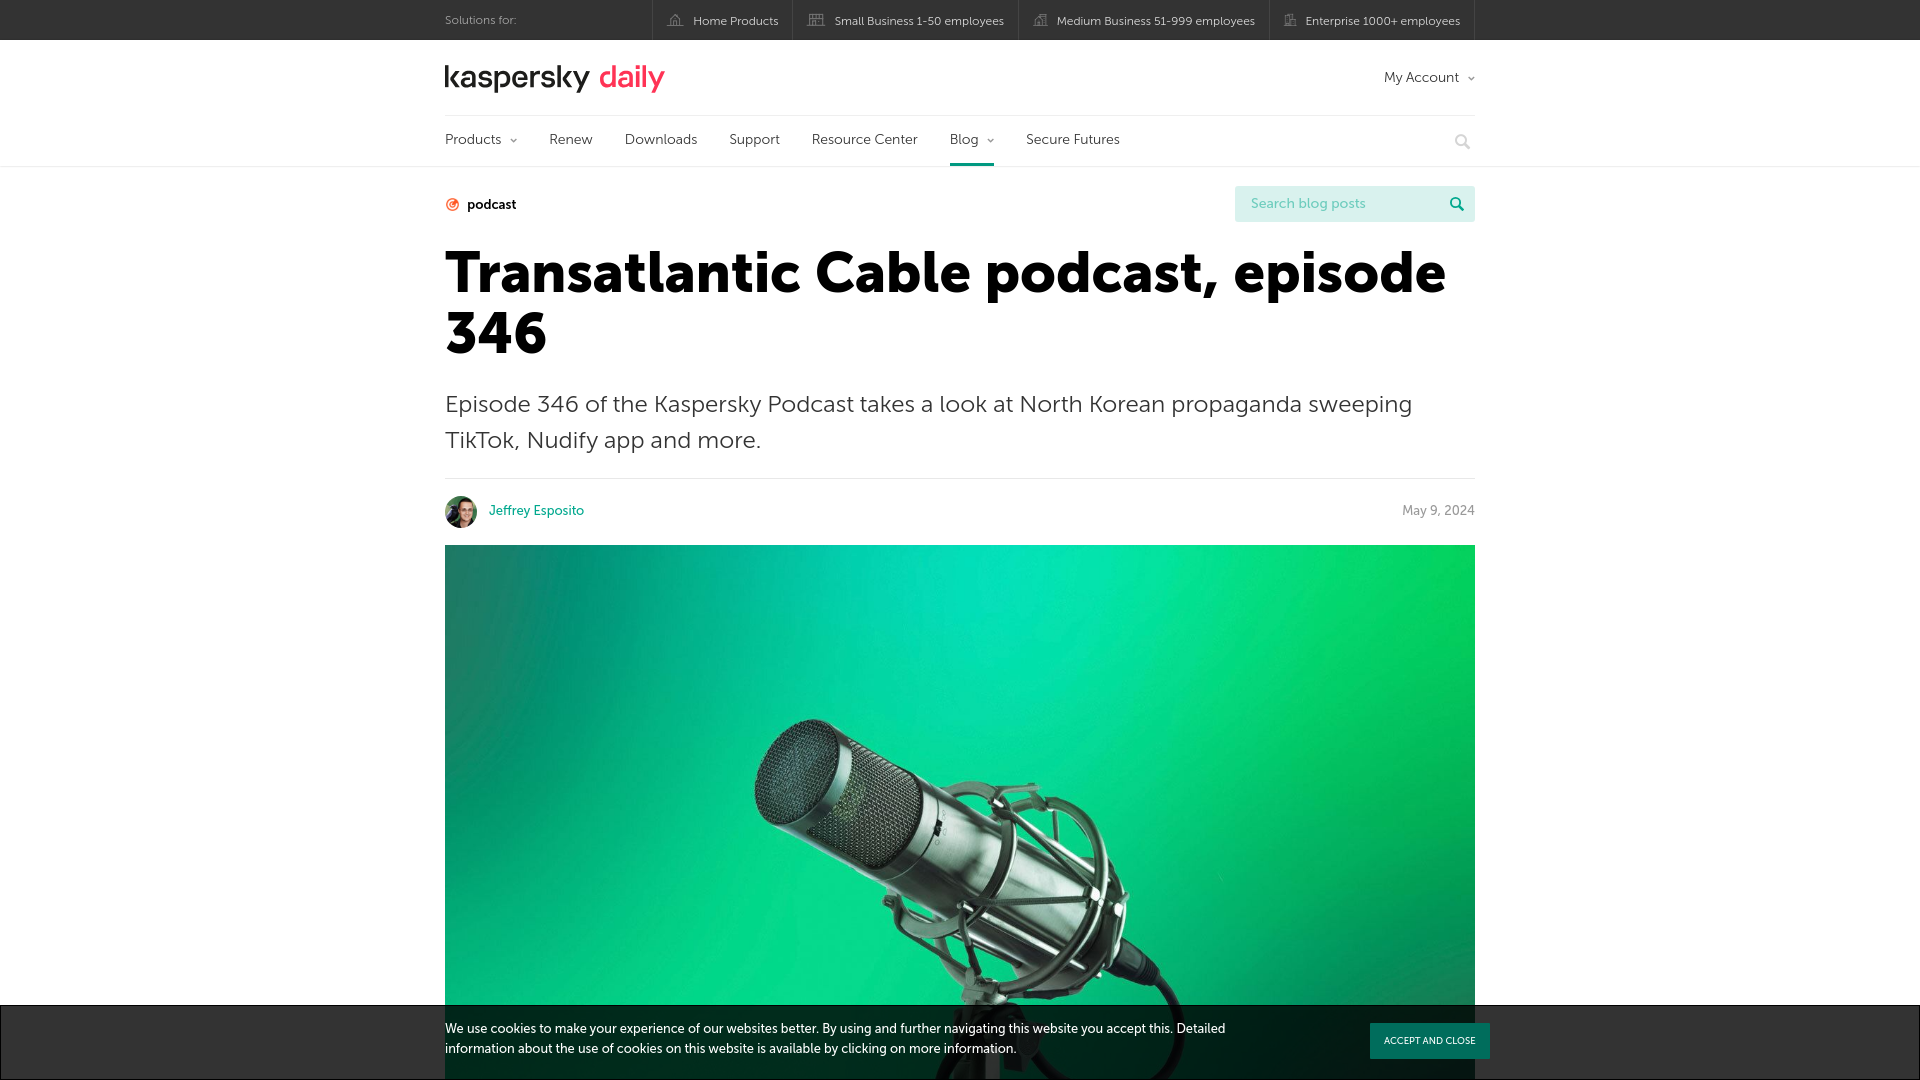 Transatlantic Cable podcast episode 346 | Kaspersky official blog